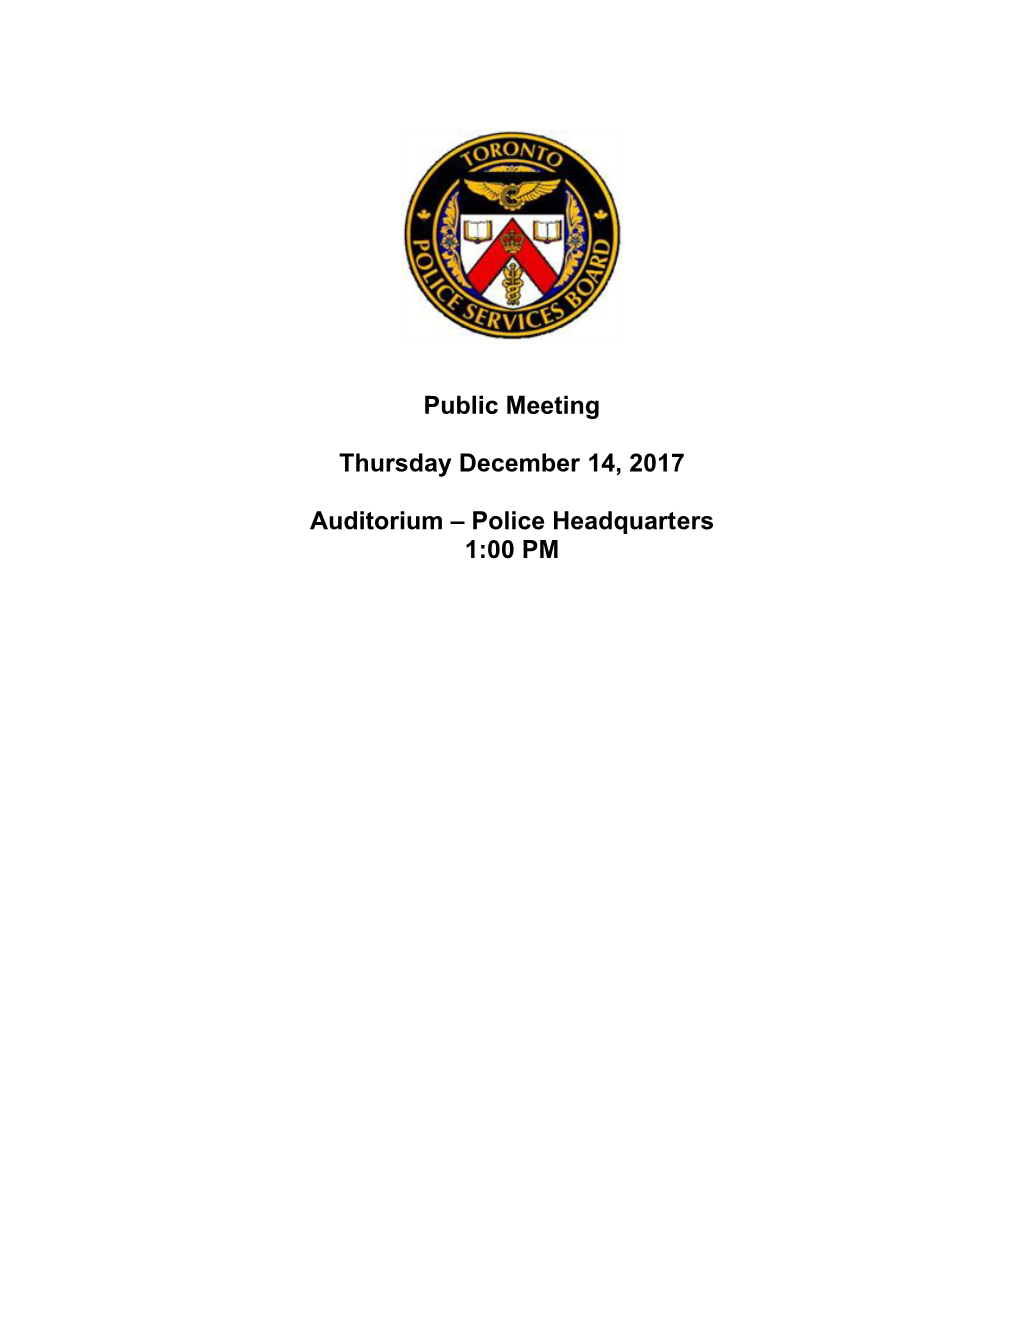 Public Meeting Thursday December 14, 2017 Auditorium – Police Headquarters 1:00 PM